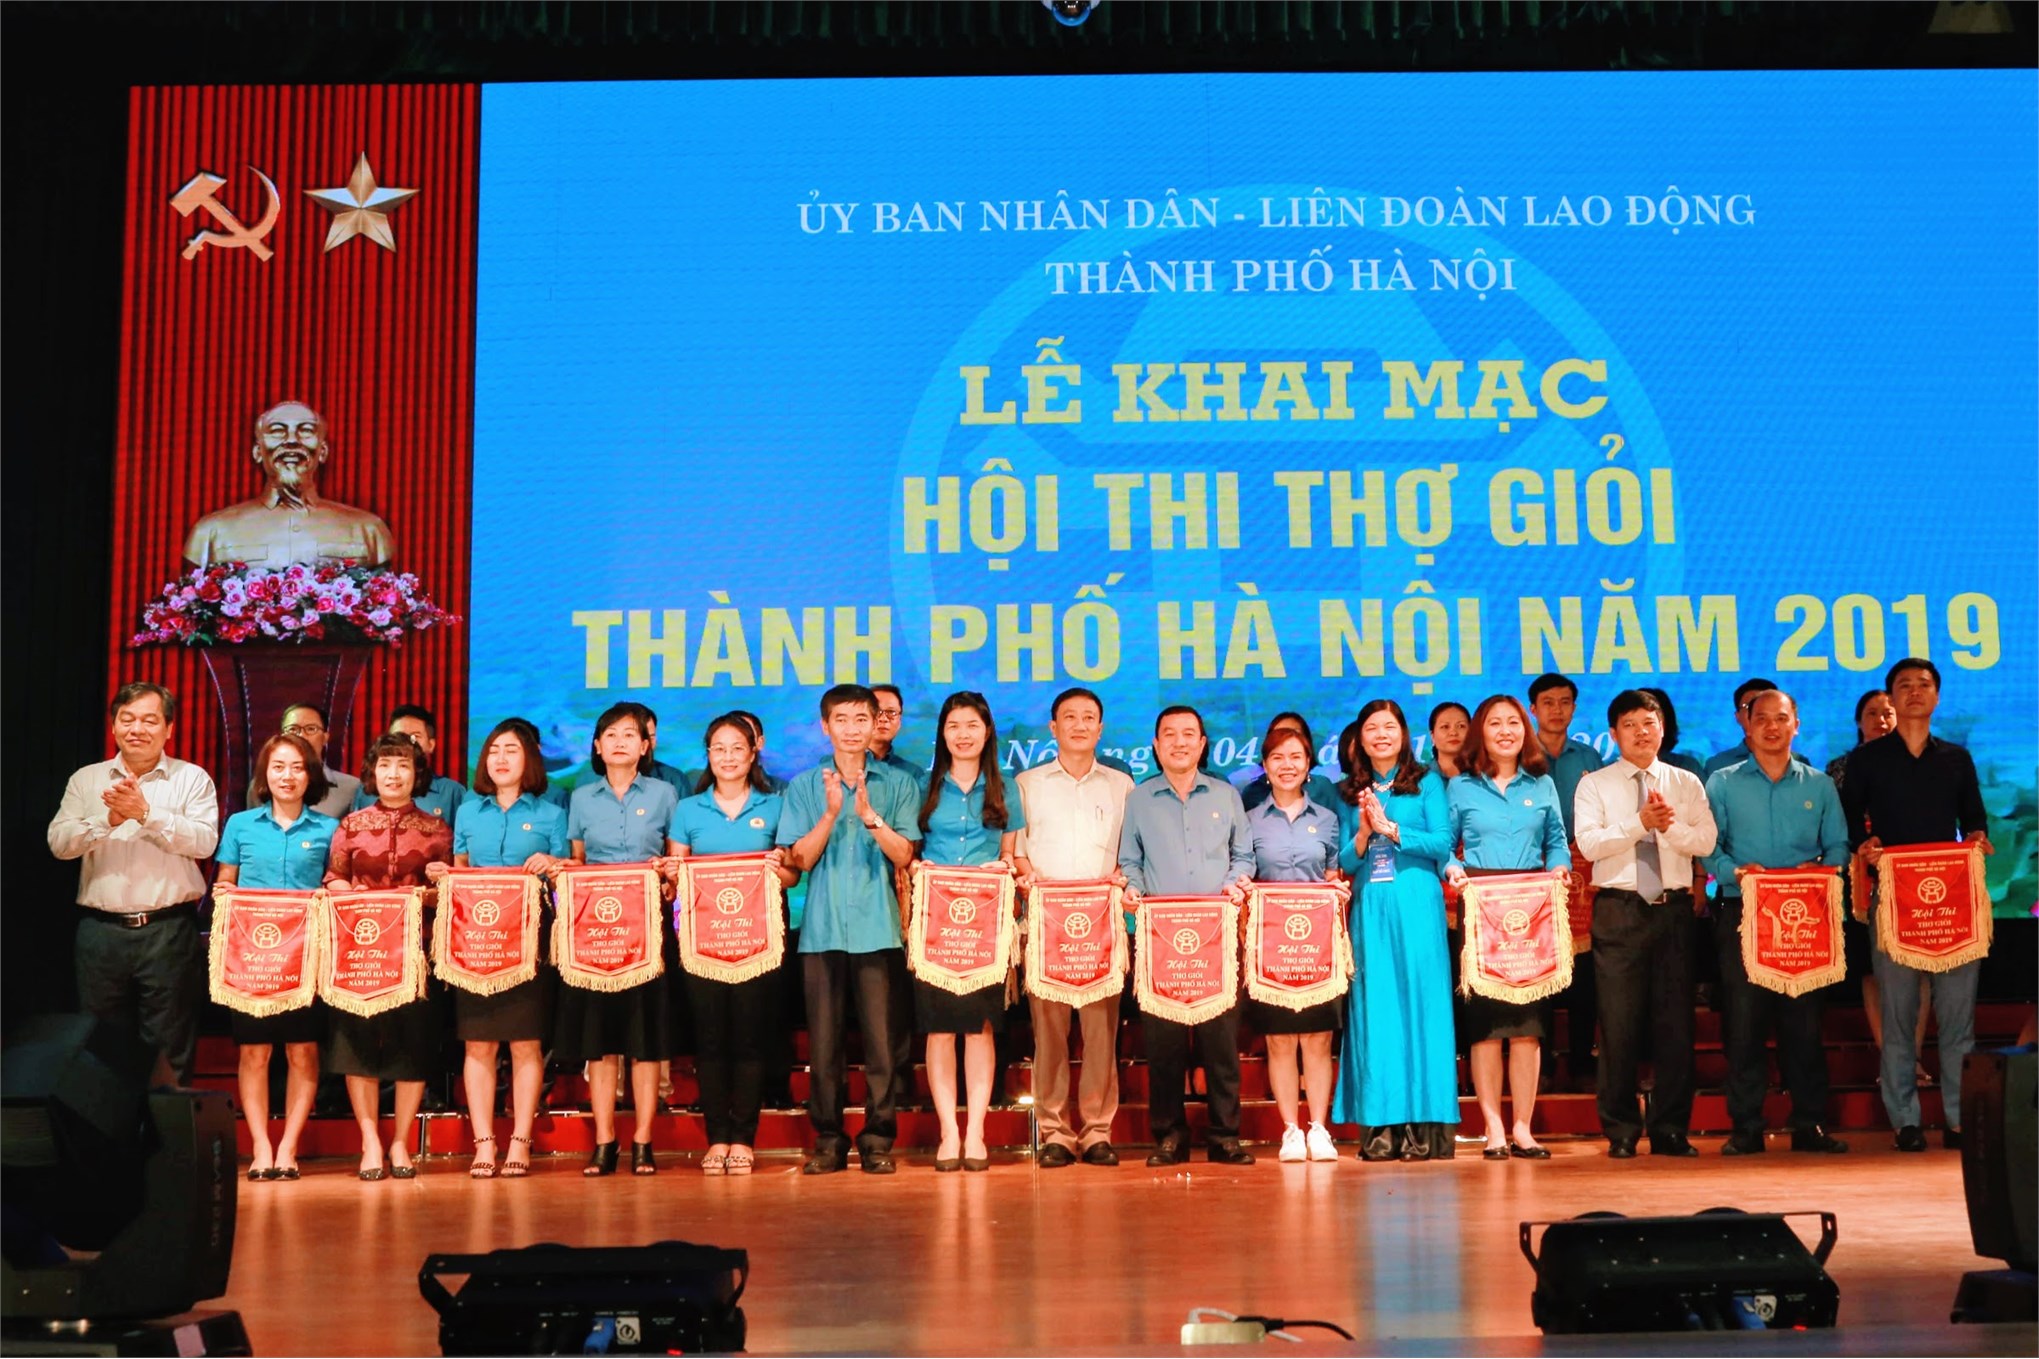 Trung tâm Việt Nhật tổ chức thi 7 nghề tại Hội thi thợ giỏi thành phố Hà Nội năm 2019